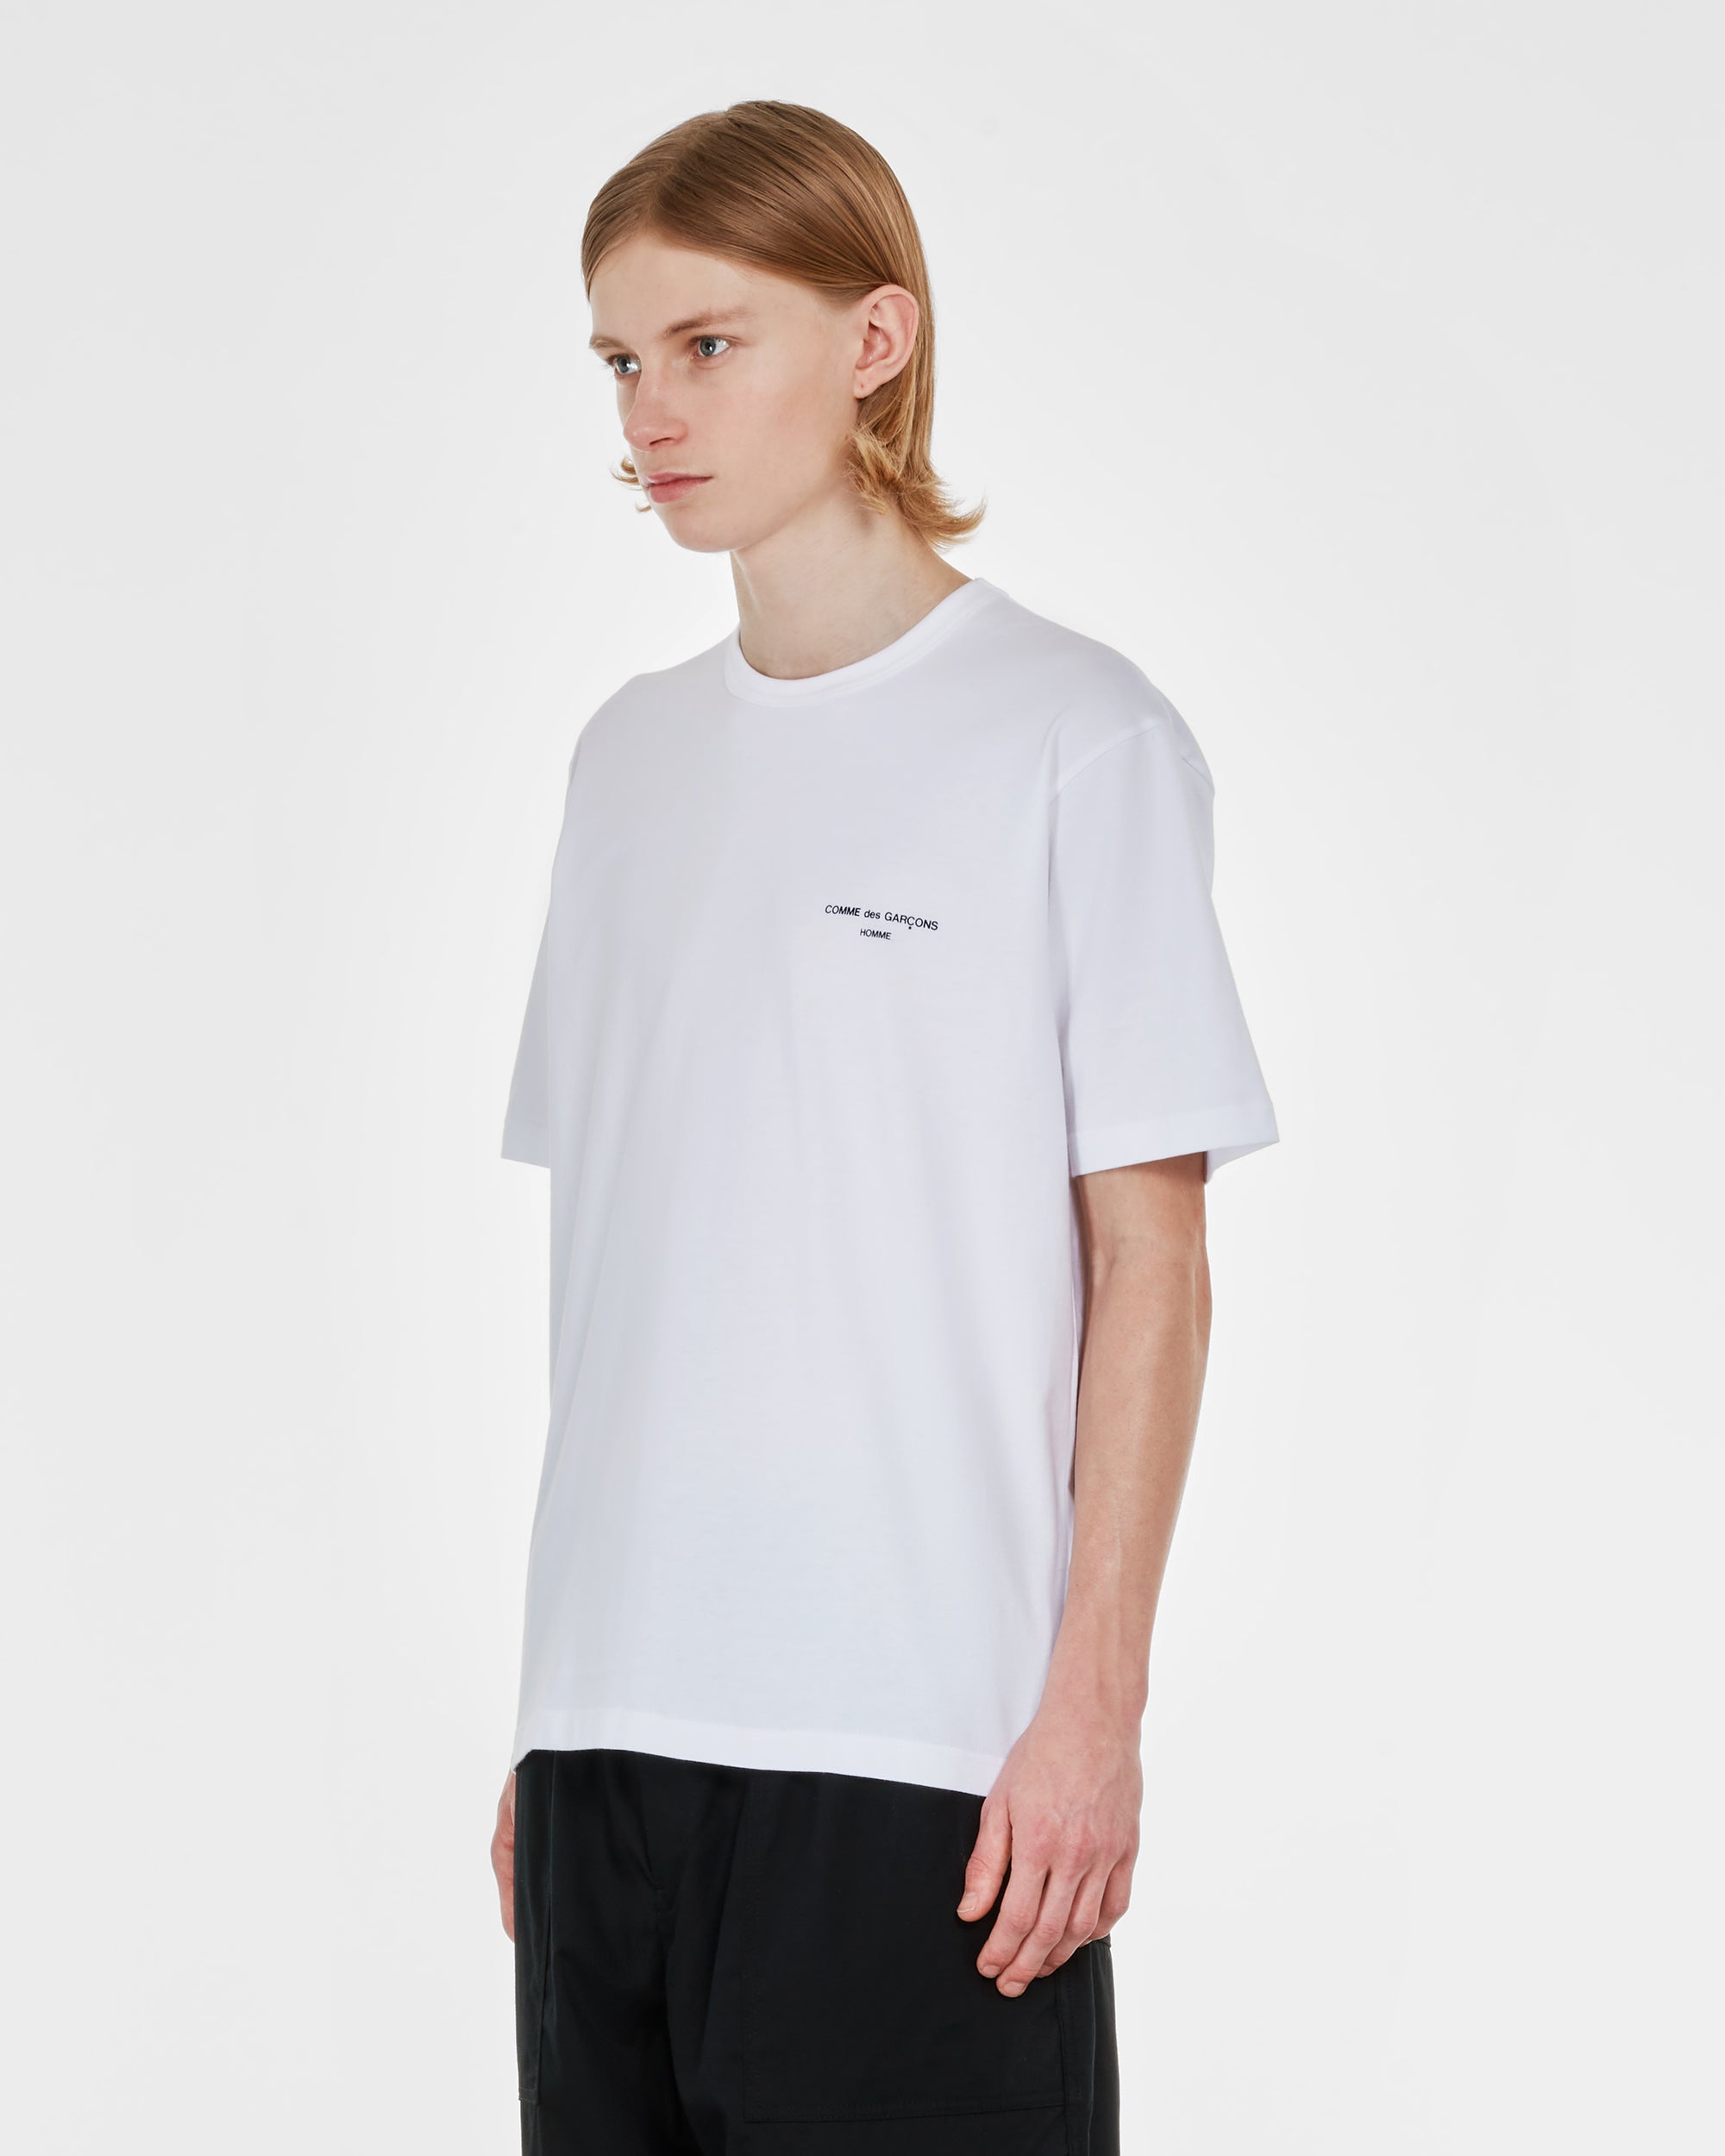 Comme des Garçons Homme - Men's Logo T-Shirt - (White) view 3